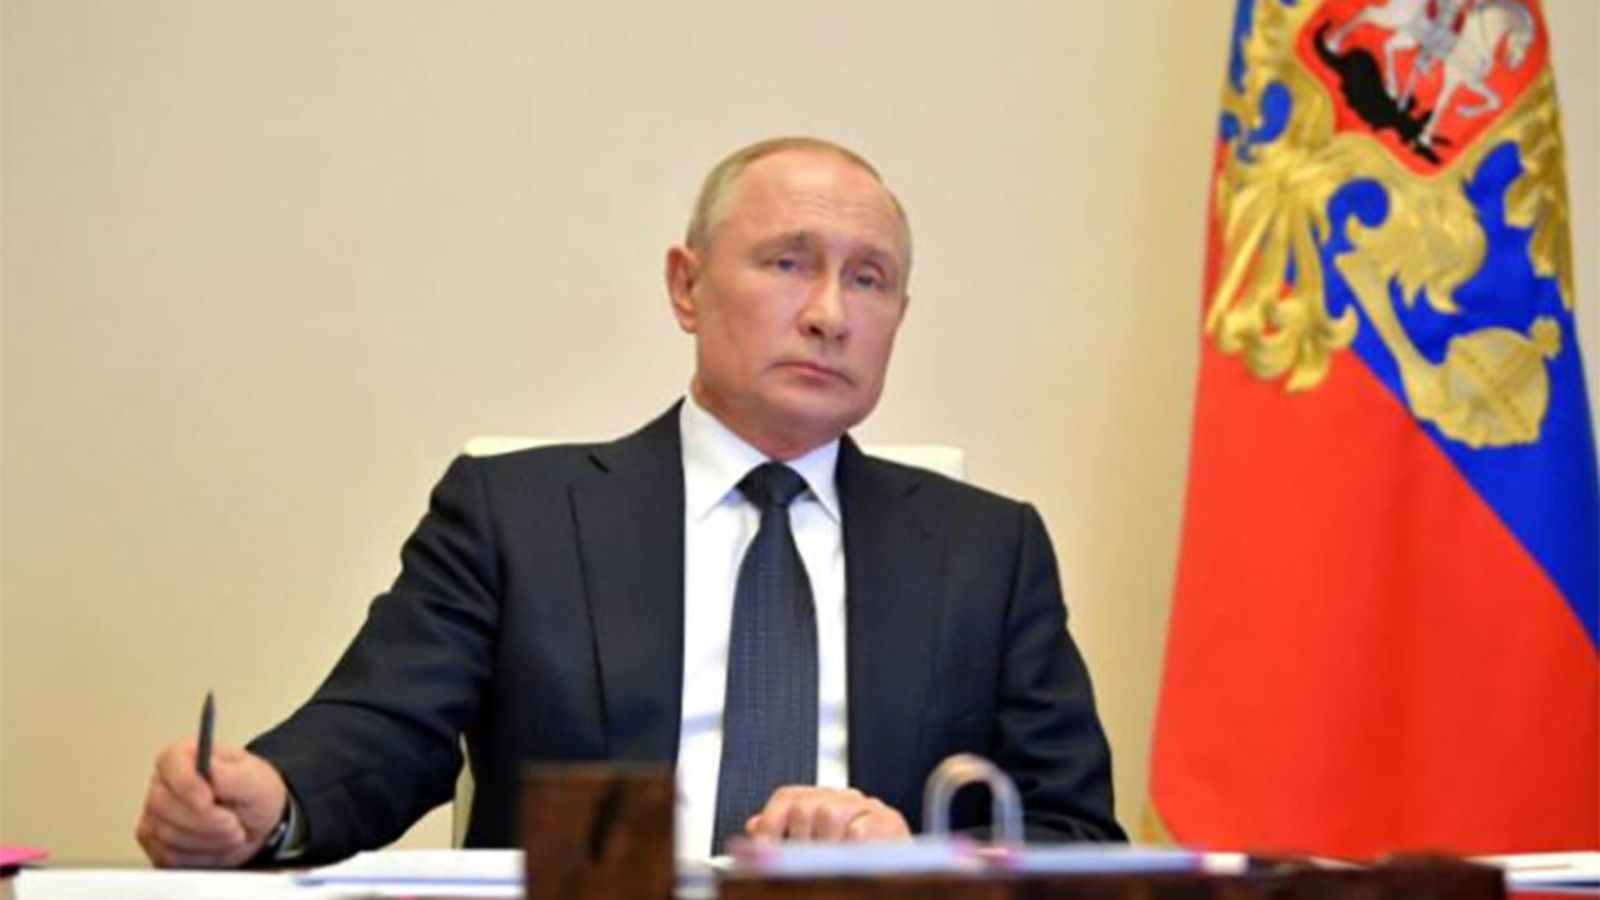 Владимир Путин: В ближайшее время примем решение по увеличению всех социальных выплат, минимального размера оплаты труда и величины прожиточного минимума, а также увеличим зарплаты бюджетников